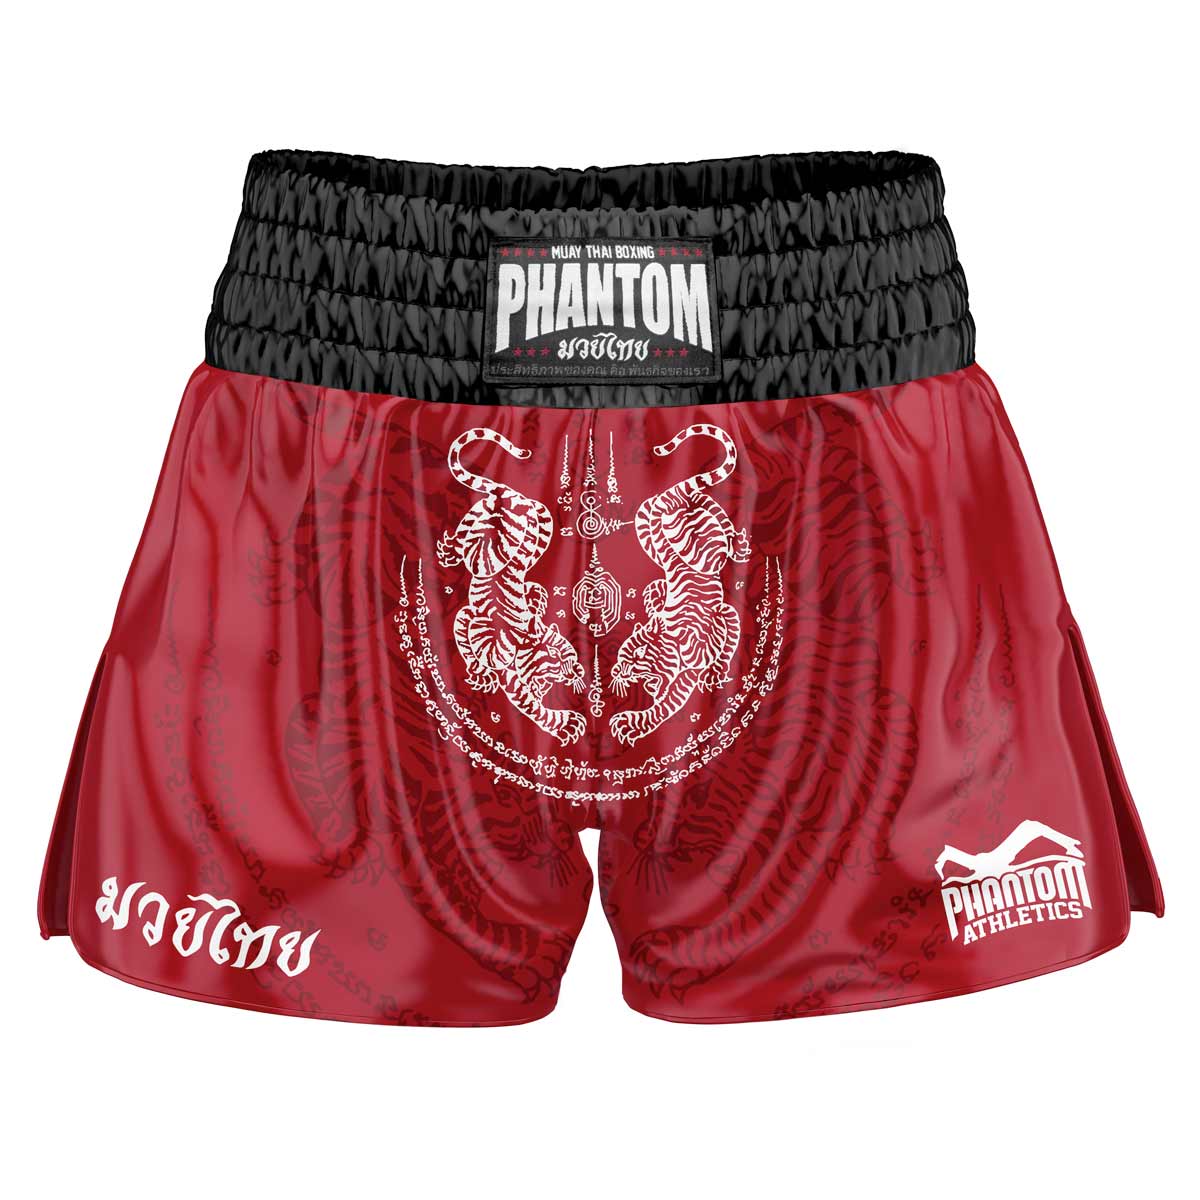 Le short Phantom Muay Thai SAK YANT en rouge. Le tissu satiné de la vieille école avec un motif de tigre traditionnel vous donne une sensation originale de Thaïlande. Dans la qualité habituelle Phantom Athletics . Idéal pour vos entraînements et compétitions de boxe thaïlandaise.